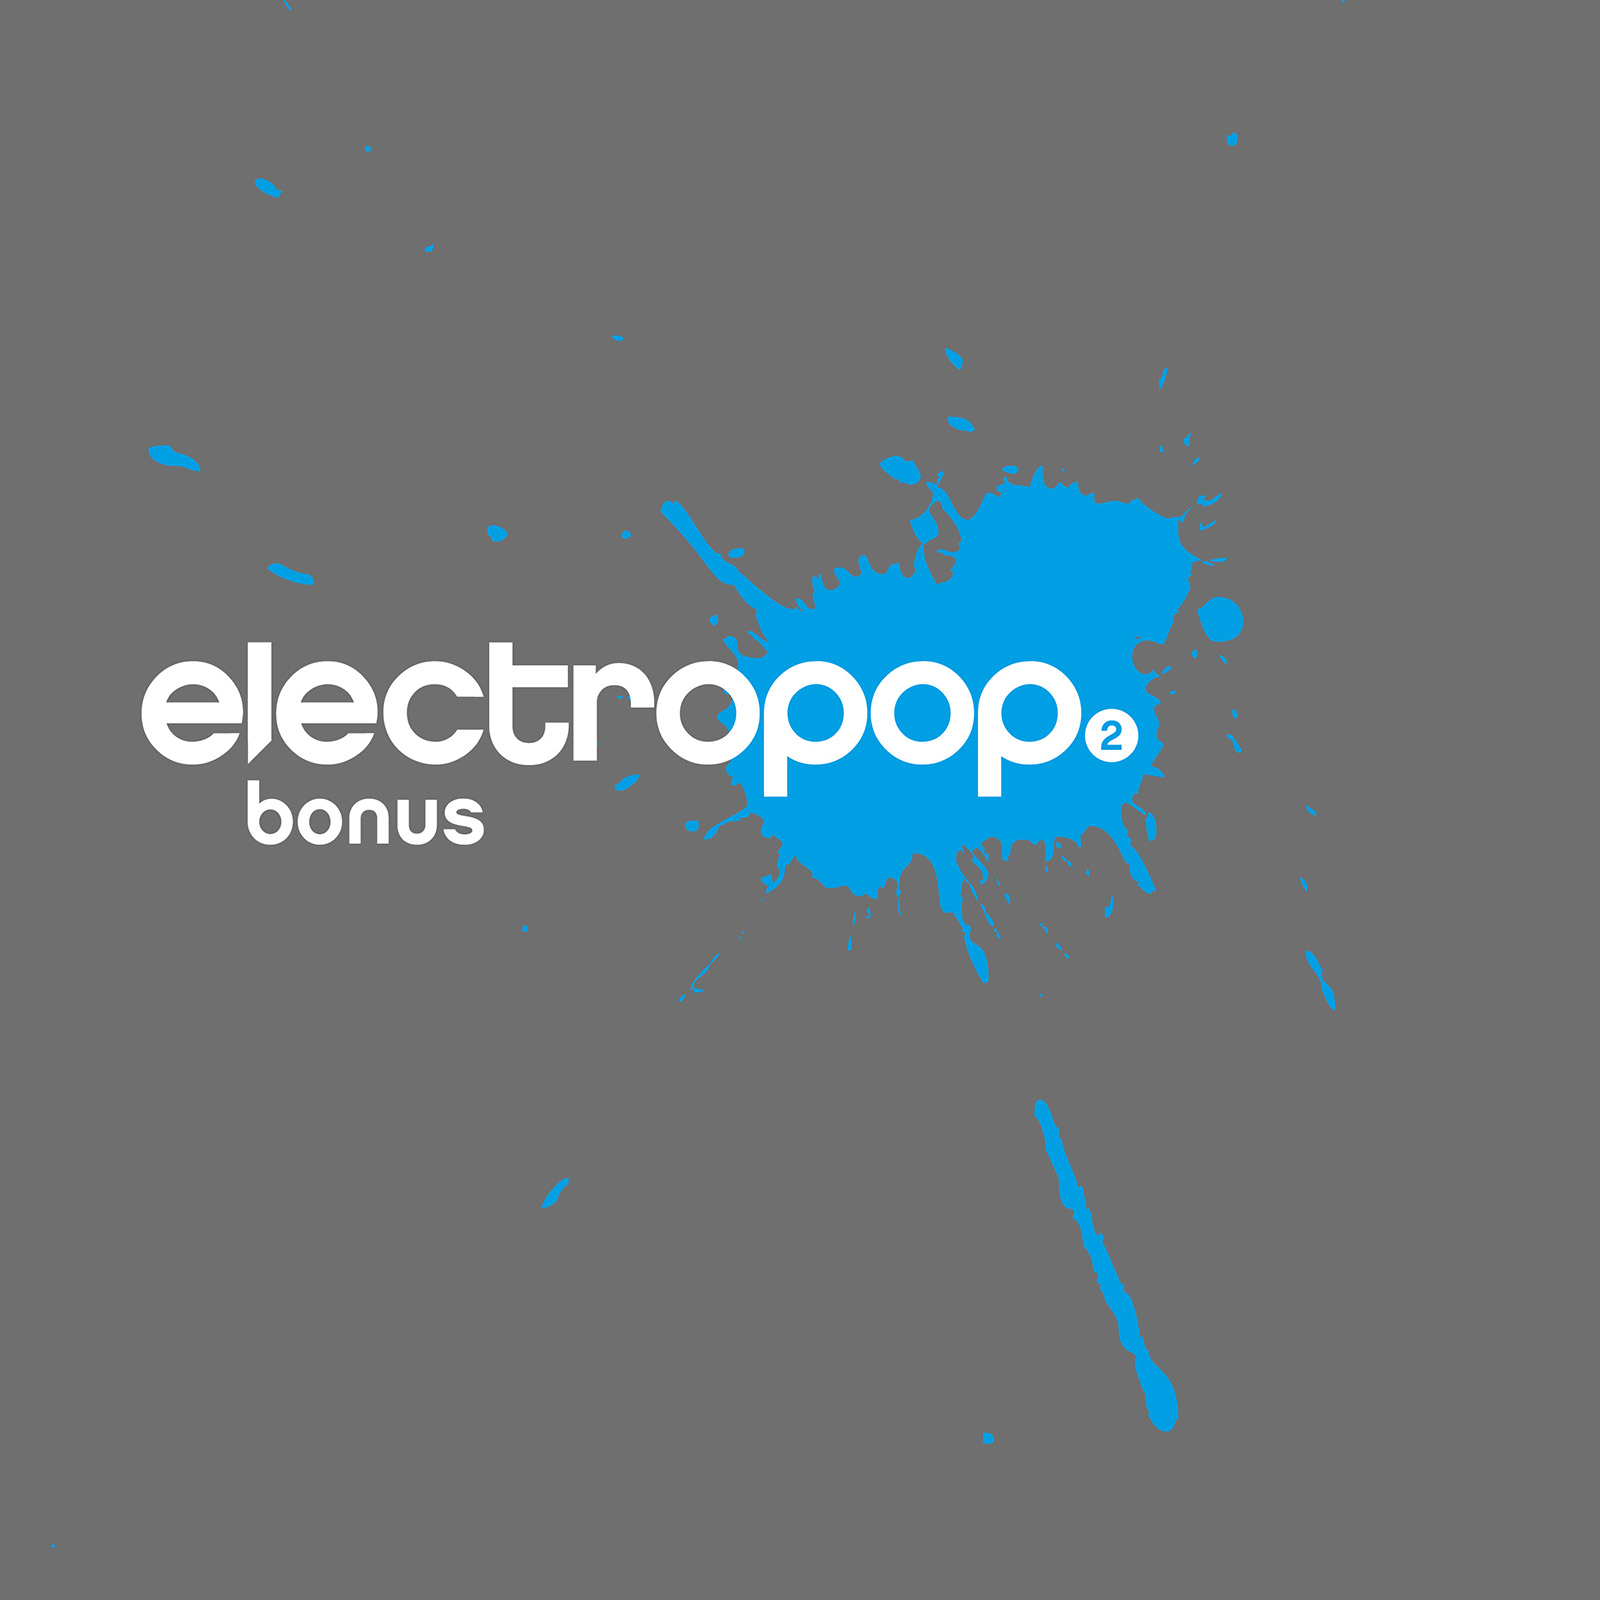 electropop.20 bonus 2